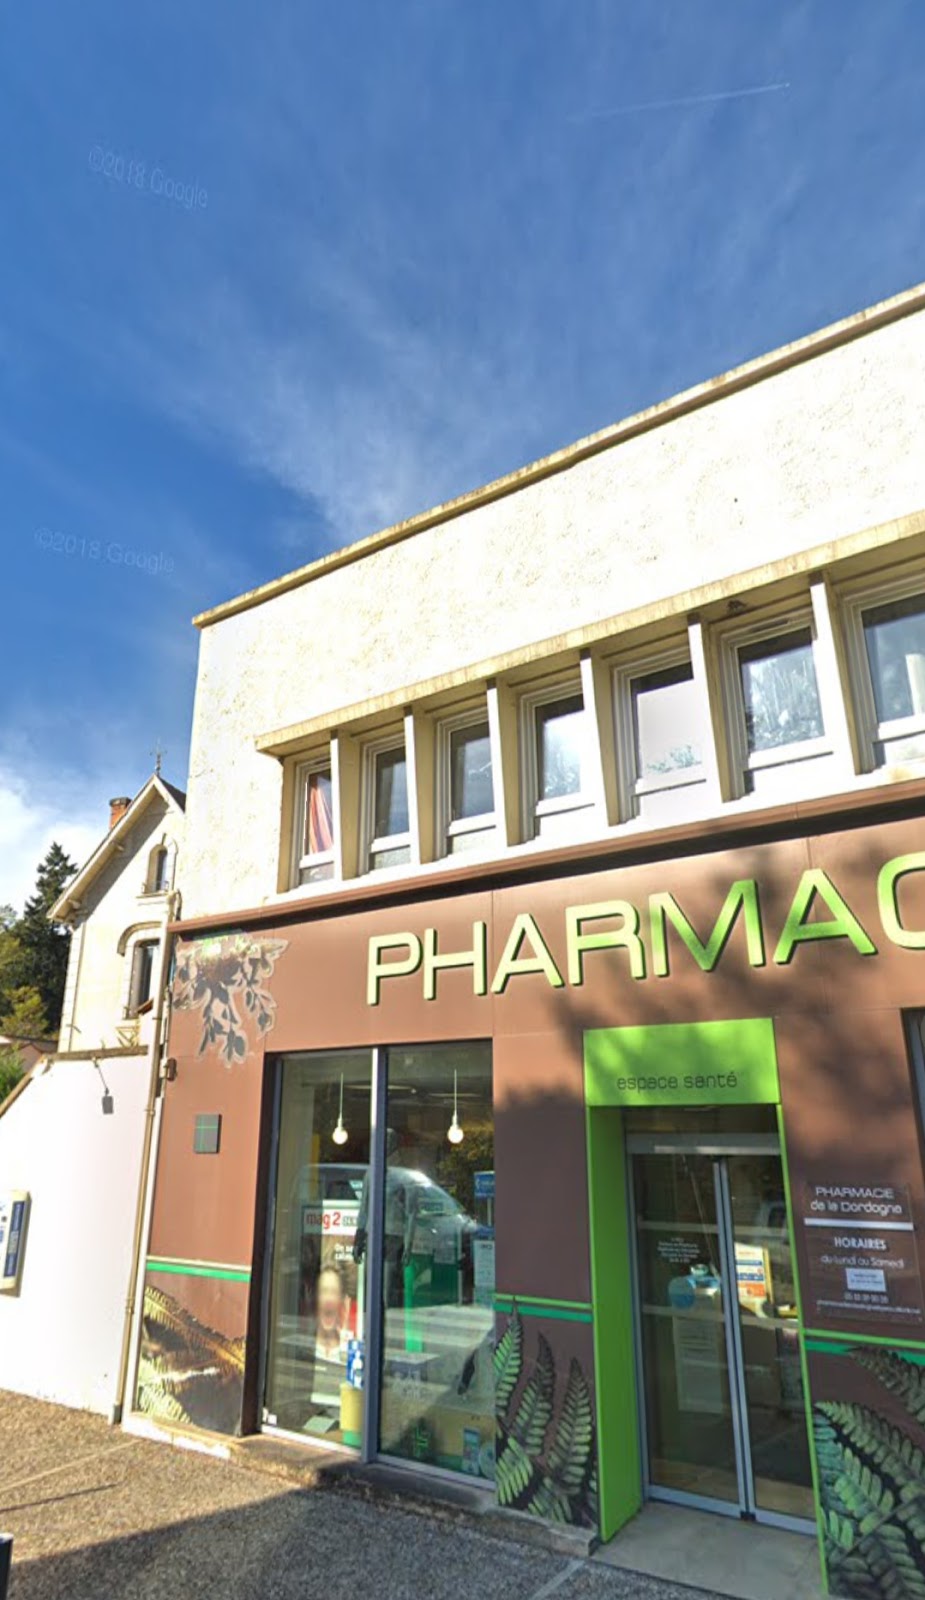 Pharmacie de la Dordogne